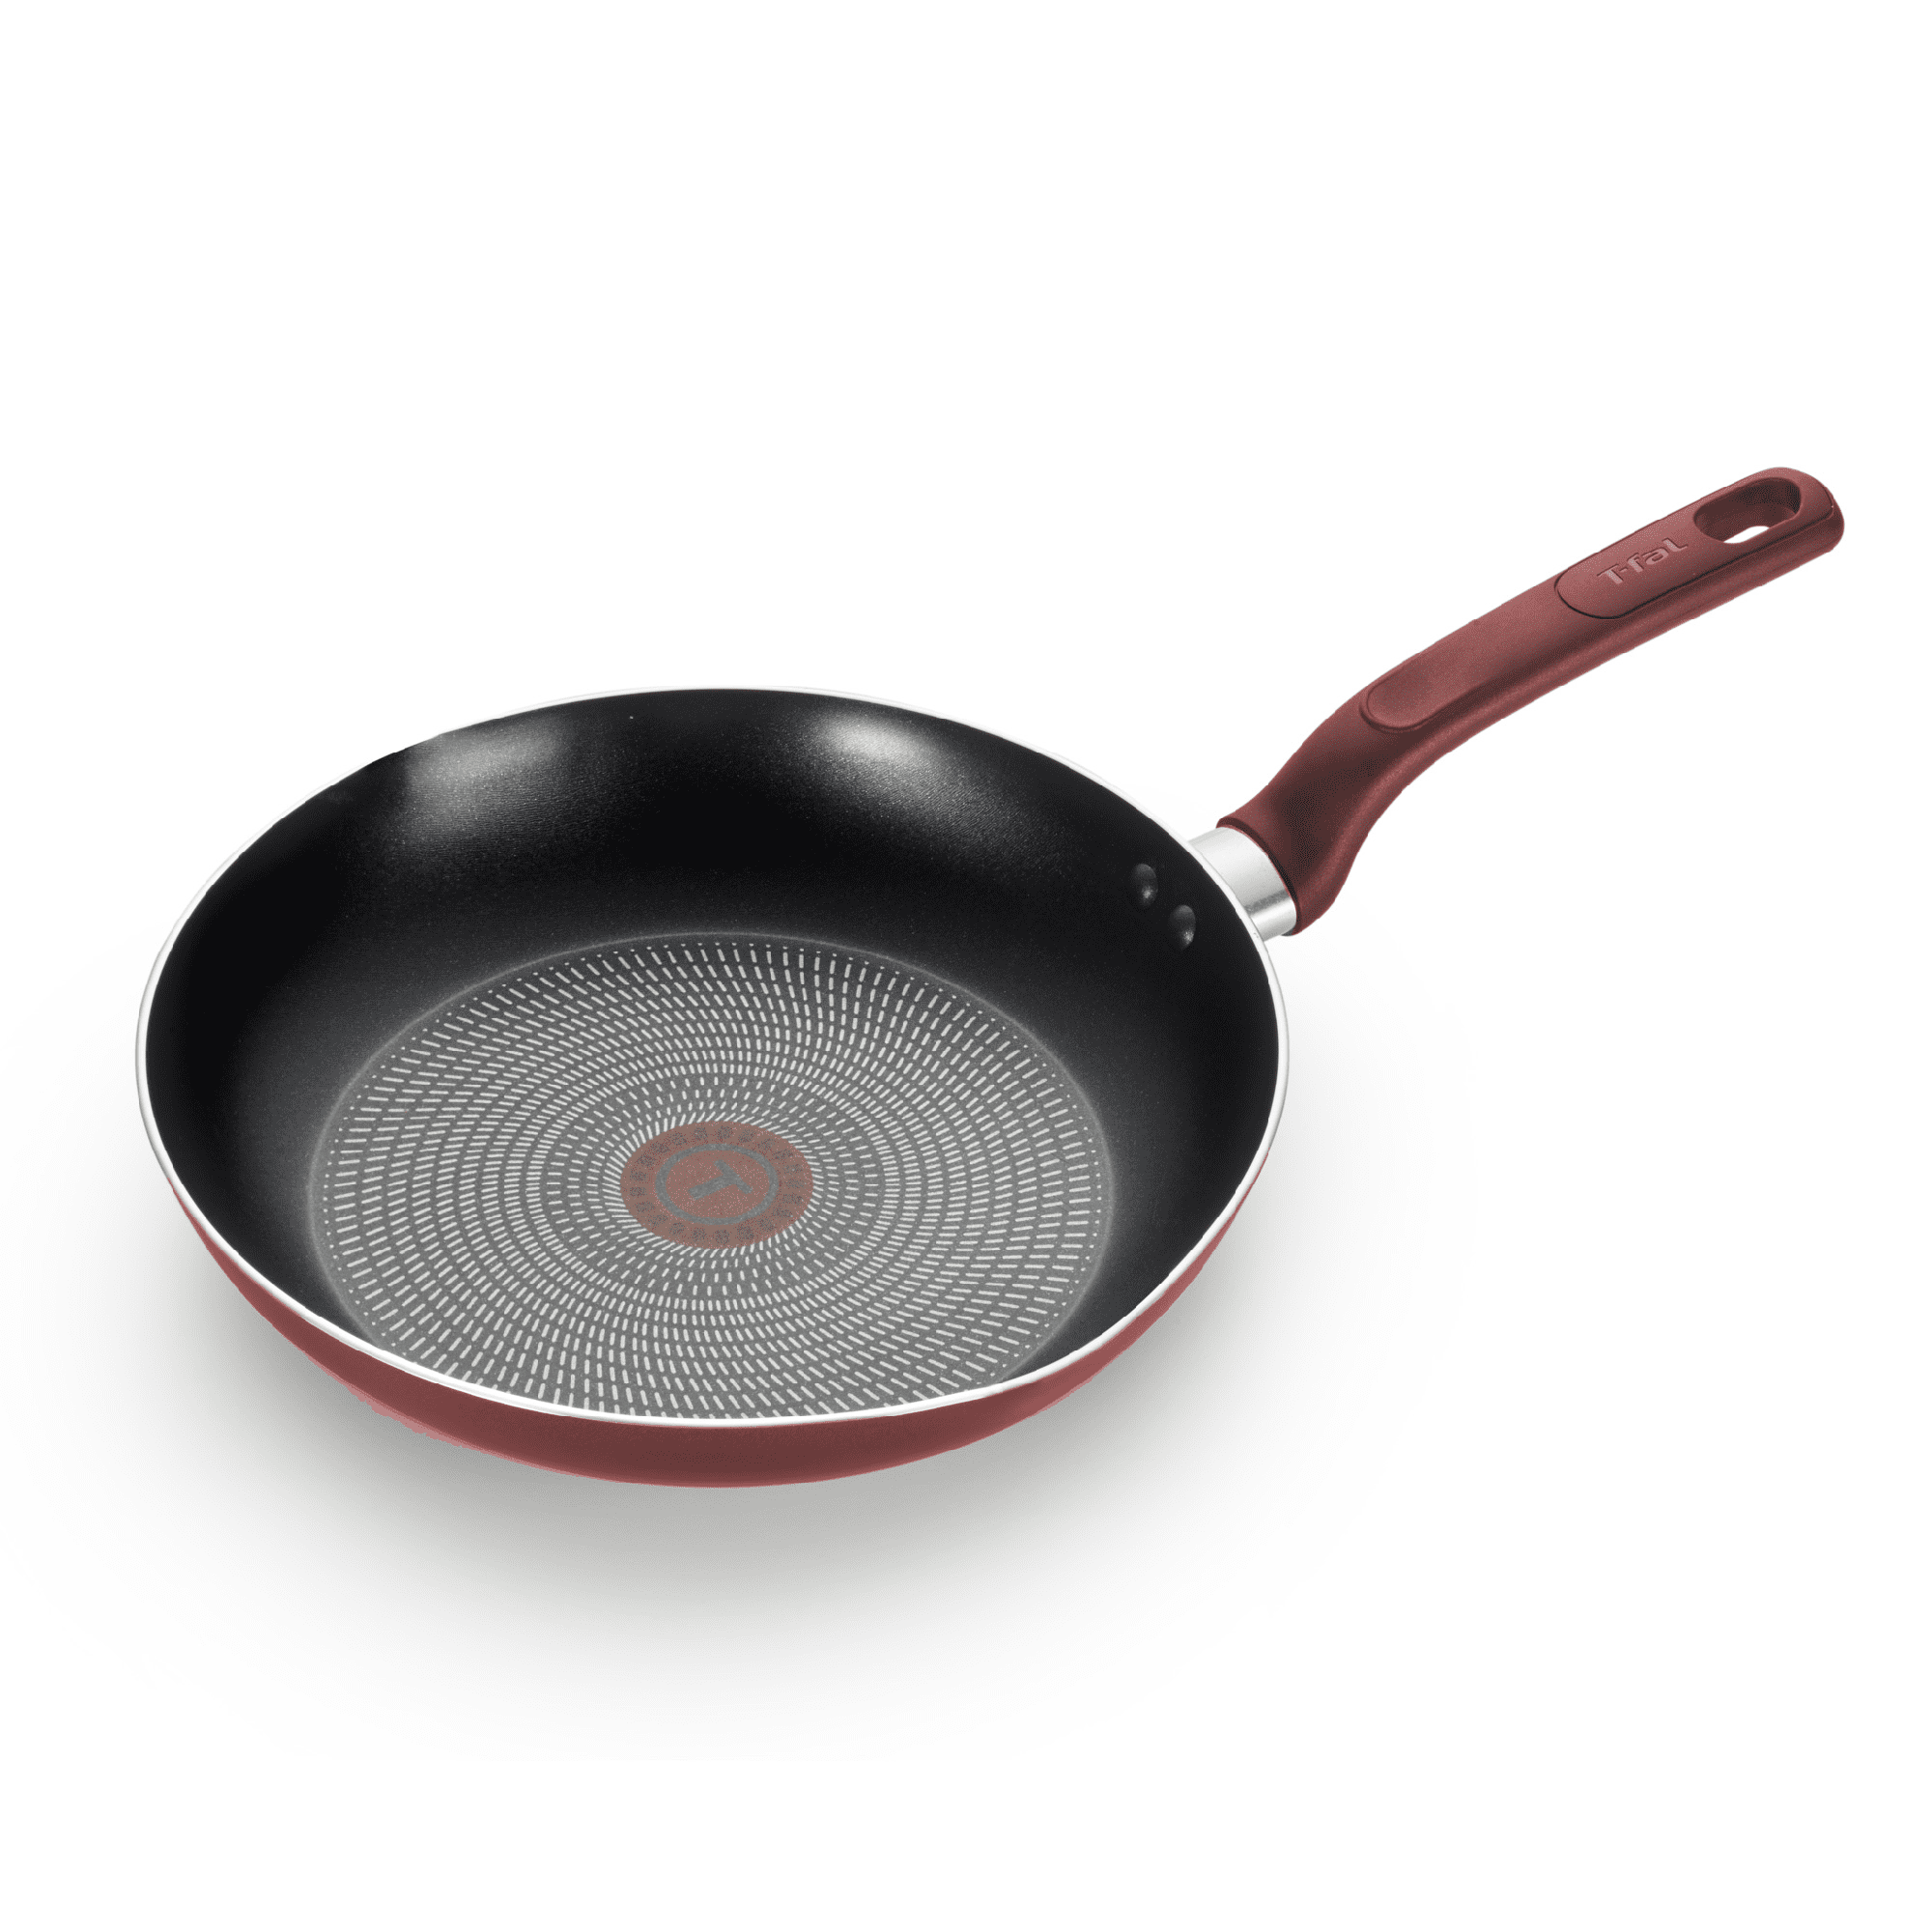 Redchef Titanium Ceramic Nonstick Frying Pan Skillet 12 Inch